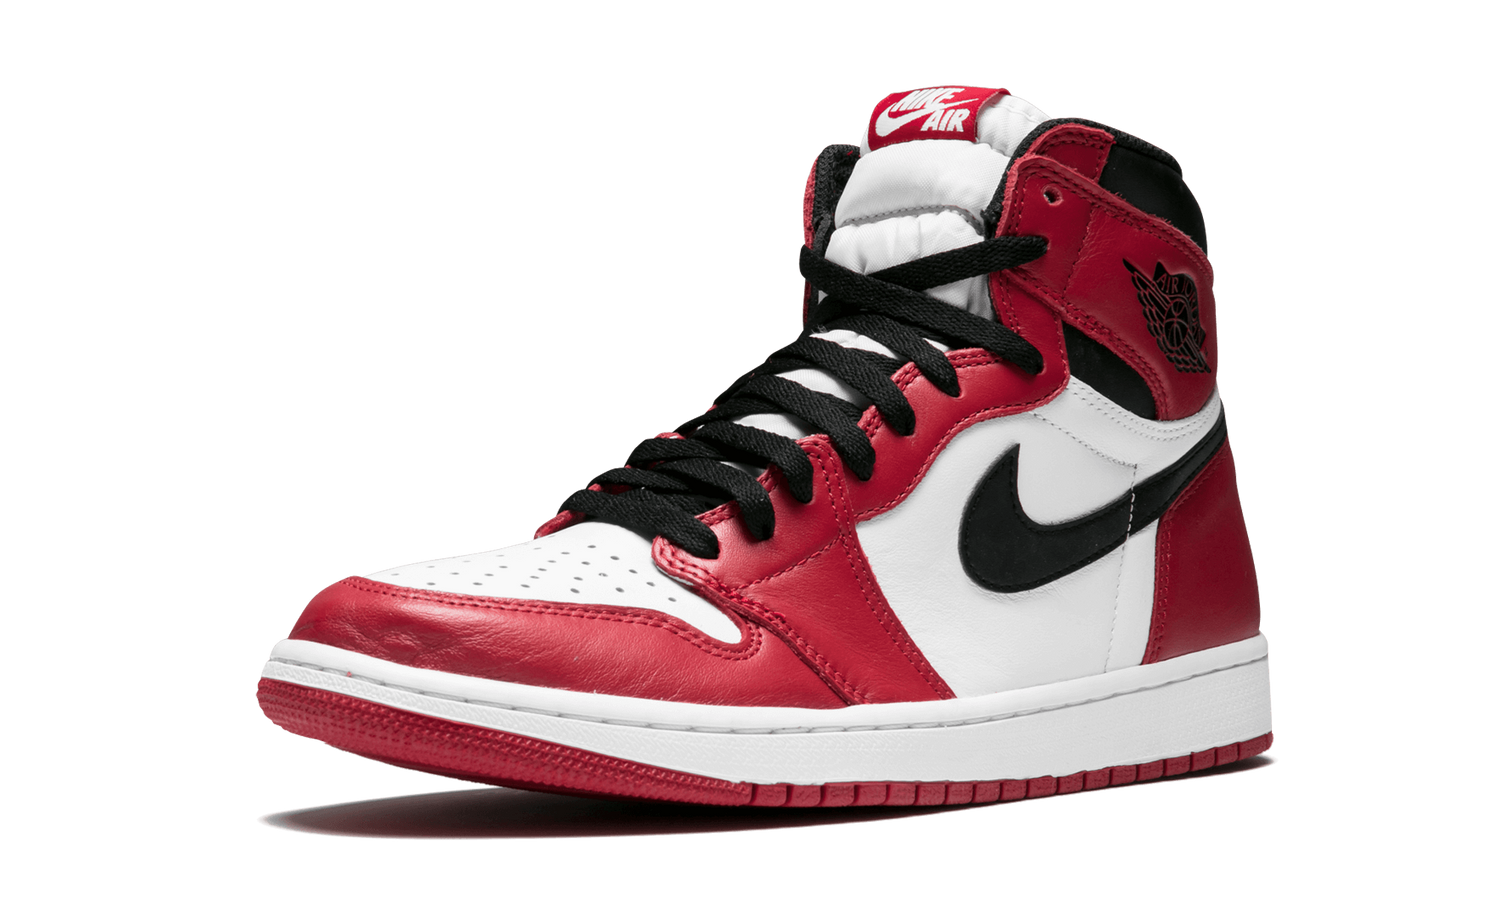 Nike Air Jordan 1. Nike Air Jordan 1 Retro High. Air Jordan 1 Retro. Nike Air Jordan 1 Retro High og. Airs shop 1